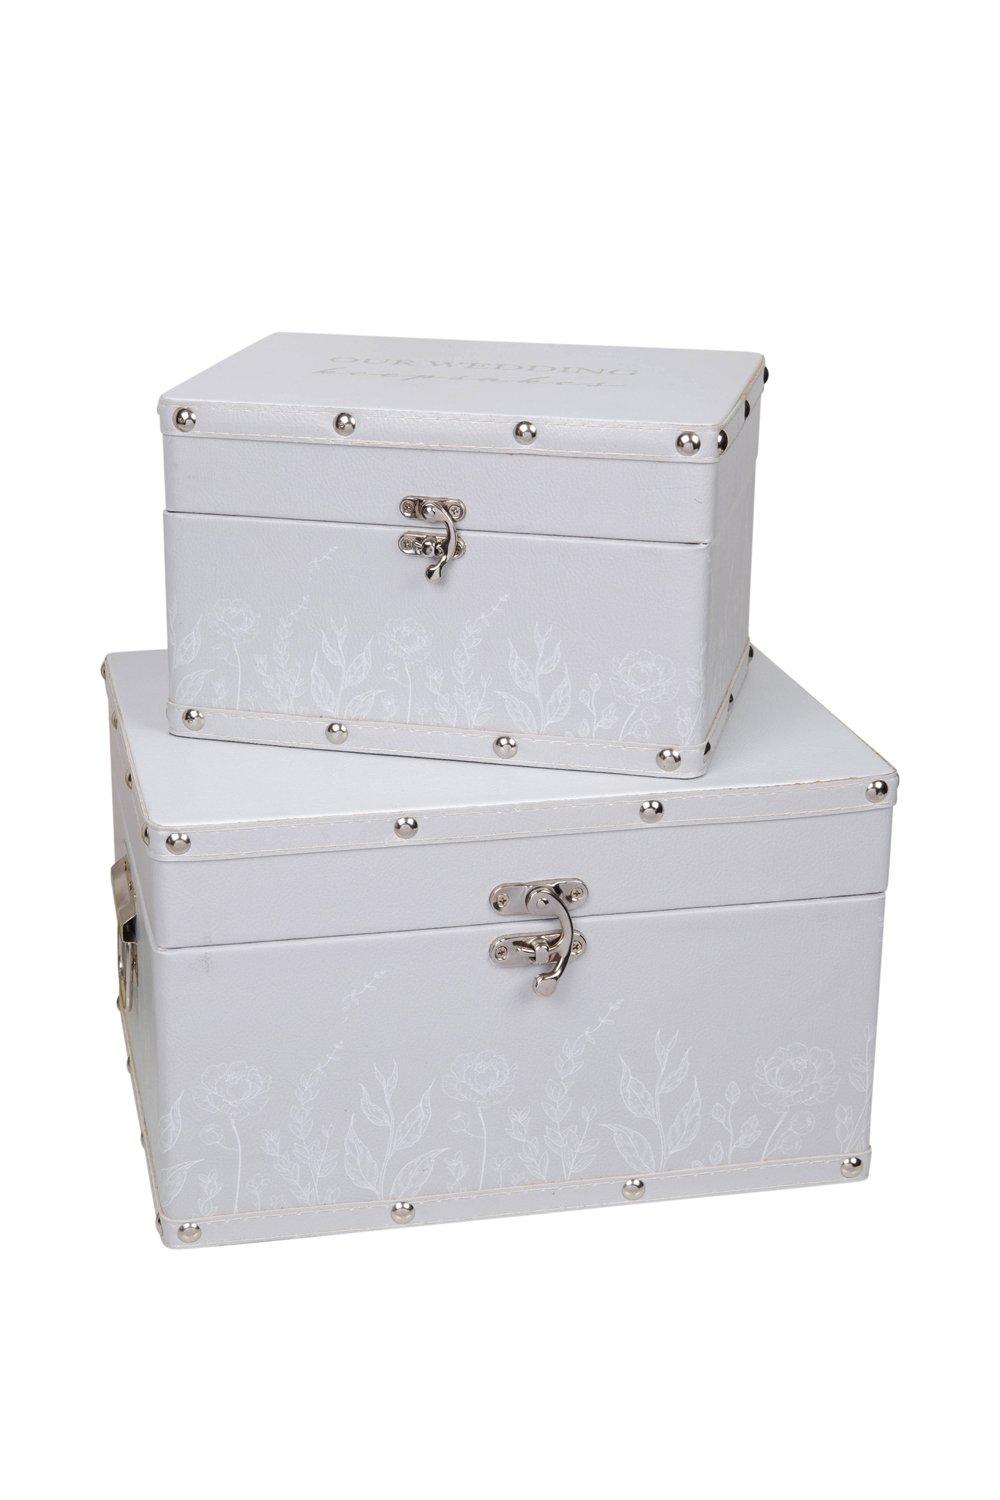 Set of 2 Luggage Boxes - Wedding Keepsakes